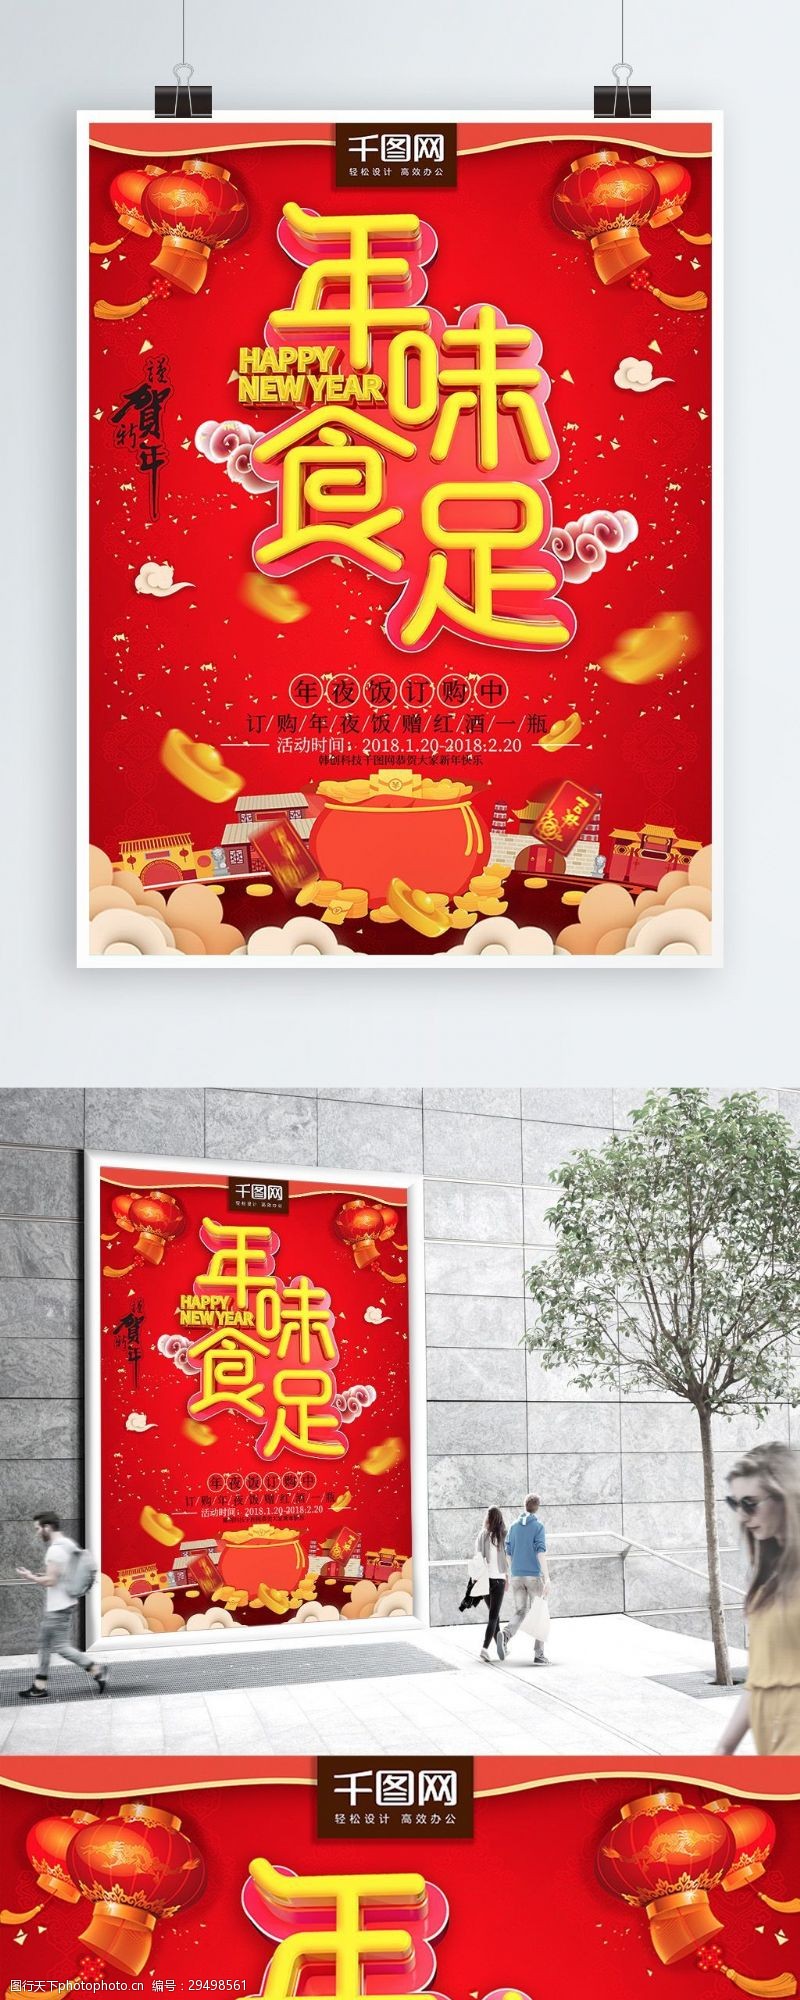 戊戌新年2018新春红色灯笼喜庆年味食足喷绘海报